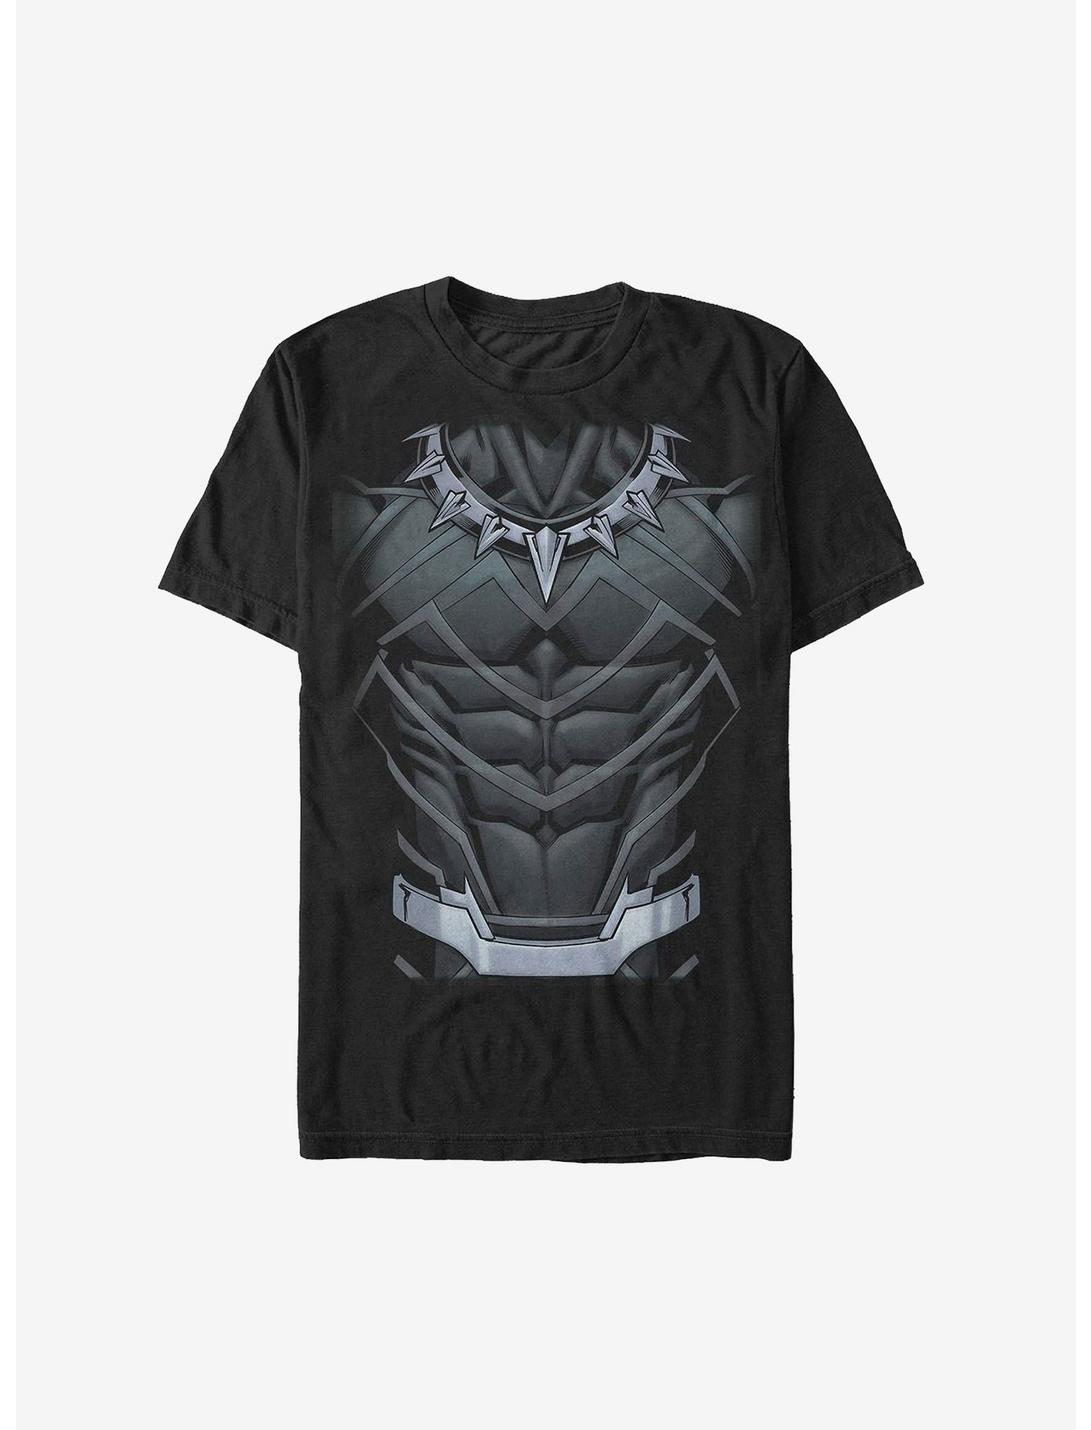 Marvel Black Panther Suit T-Shirt, BLACK, hi-res